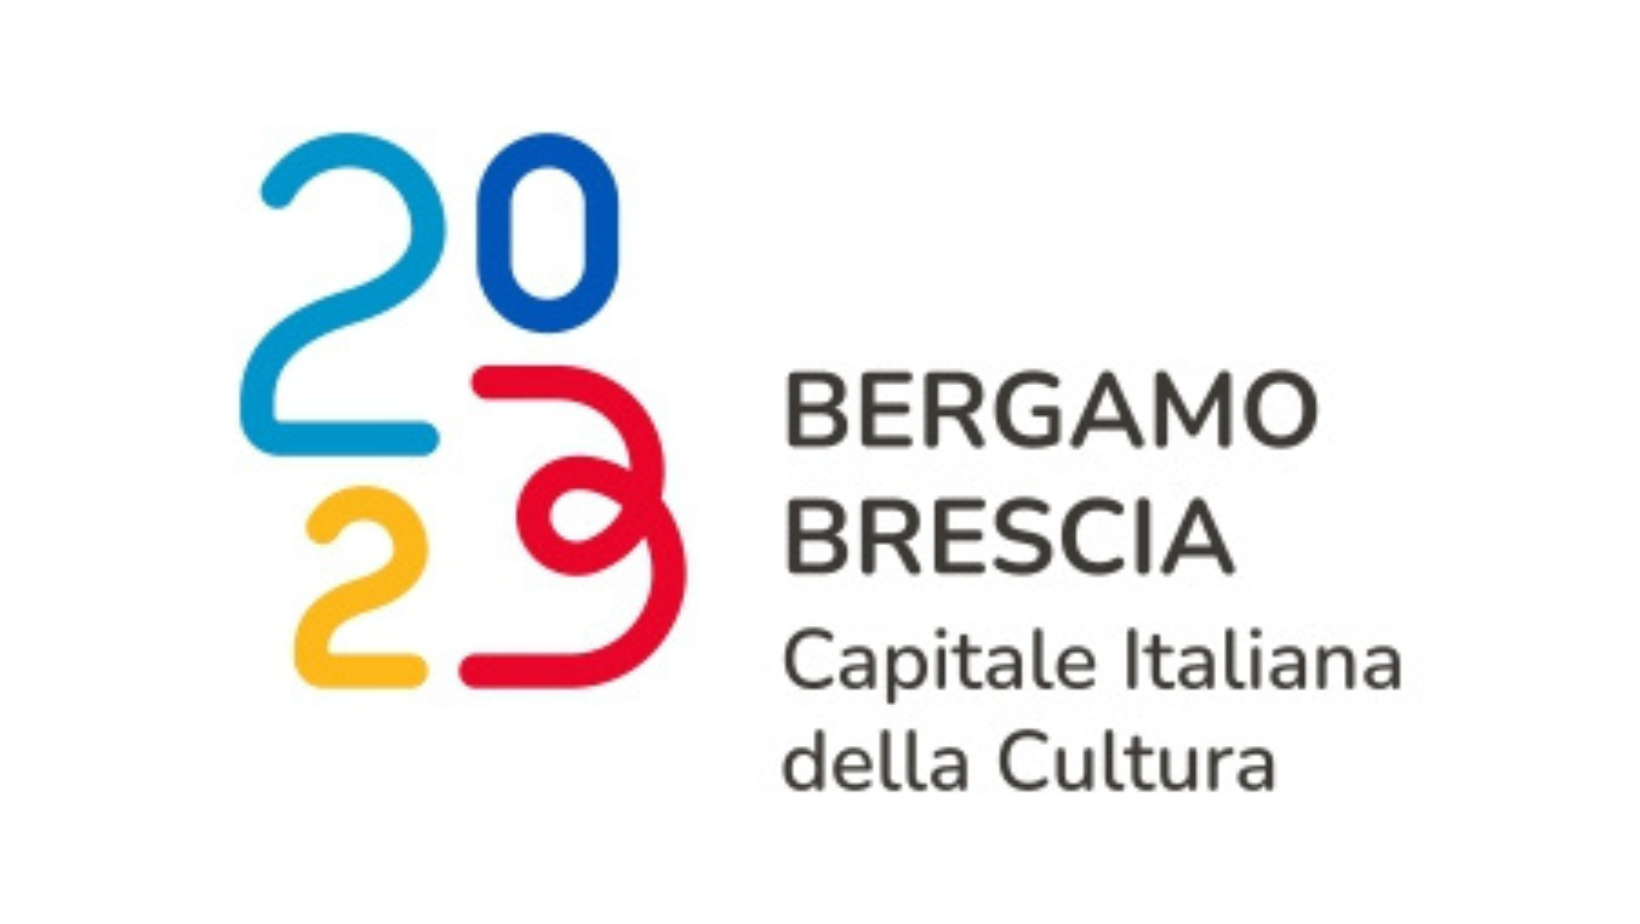 Bergamo e Brescia capitali della Cultura. Oltre 100 progetti e 500 iniziative